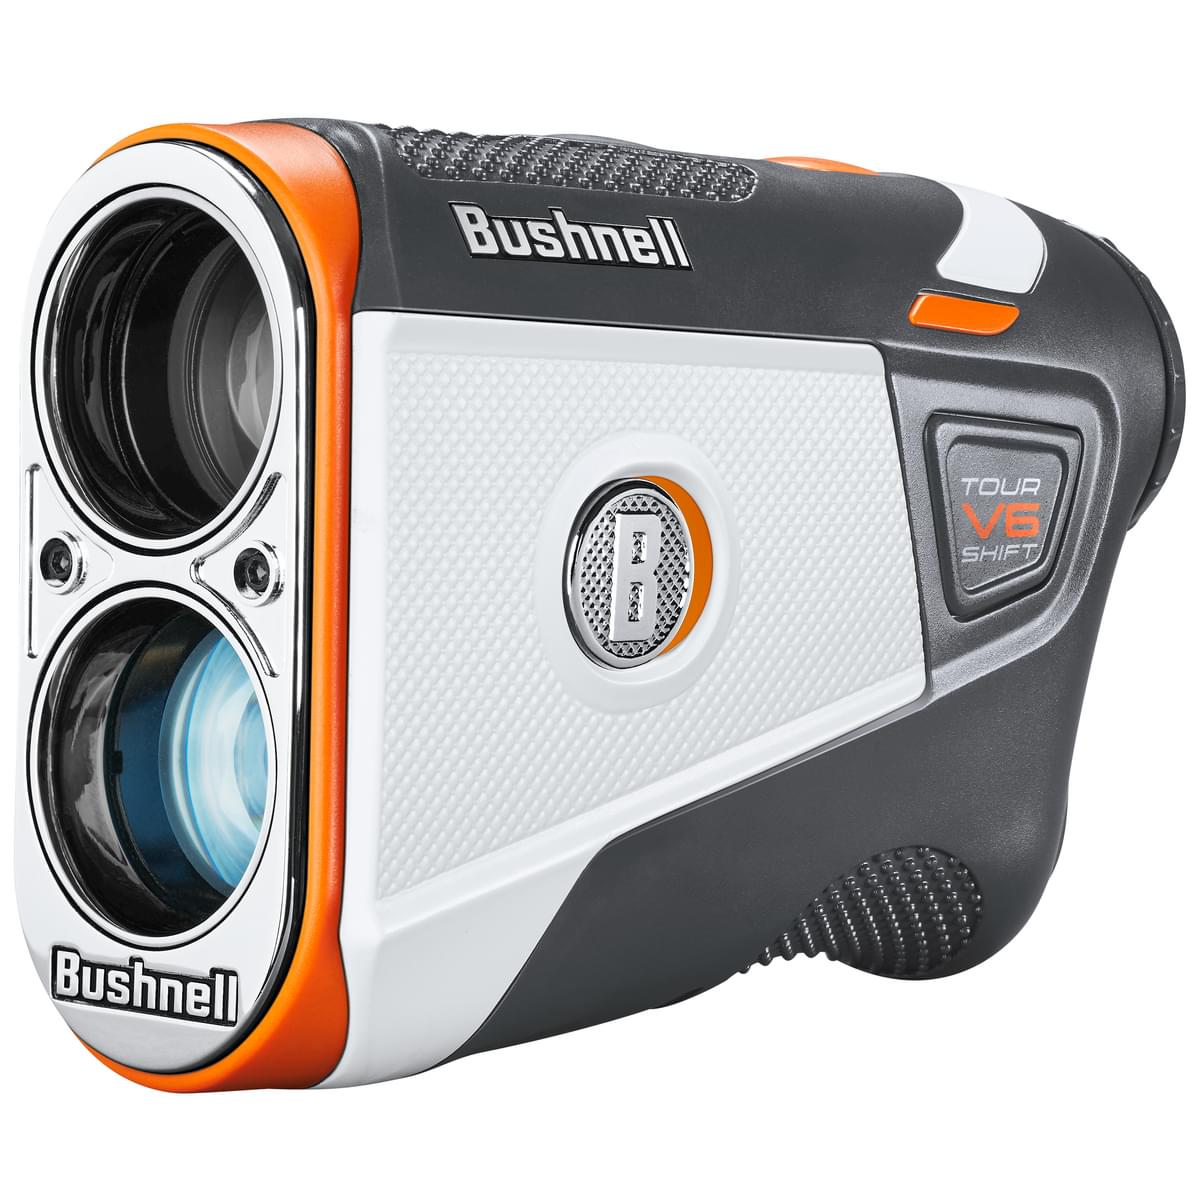 Bushnell Tour V6 Shift Laser Golf Rangefinder